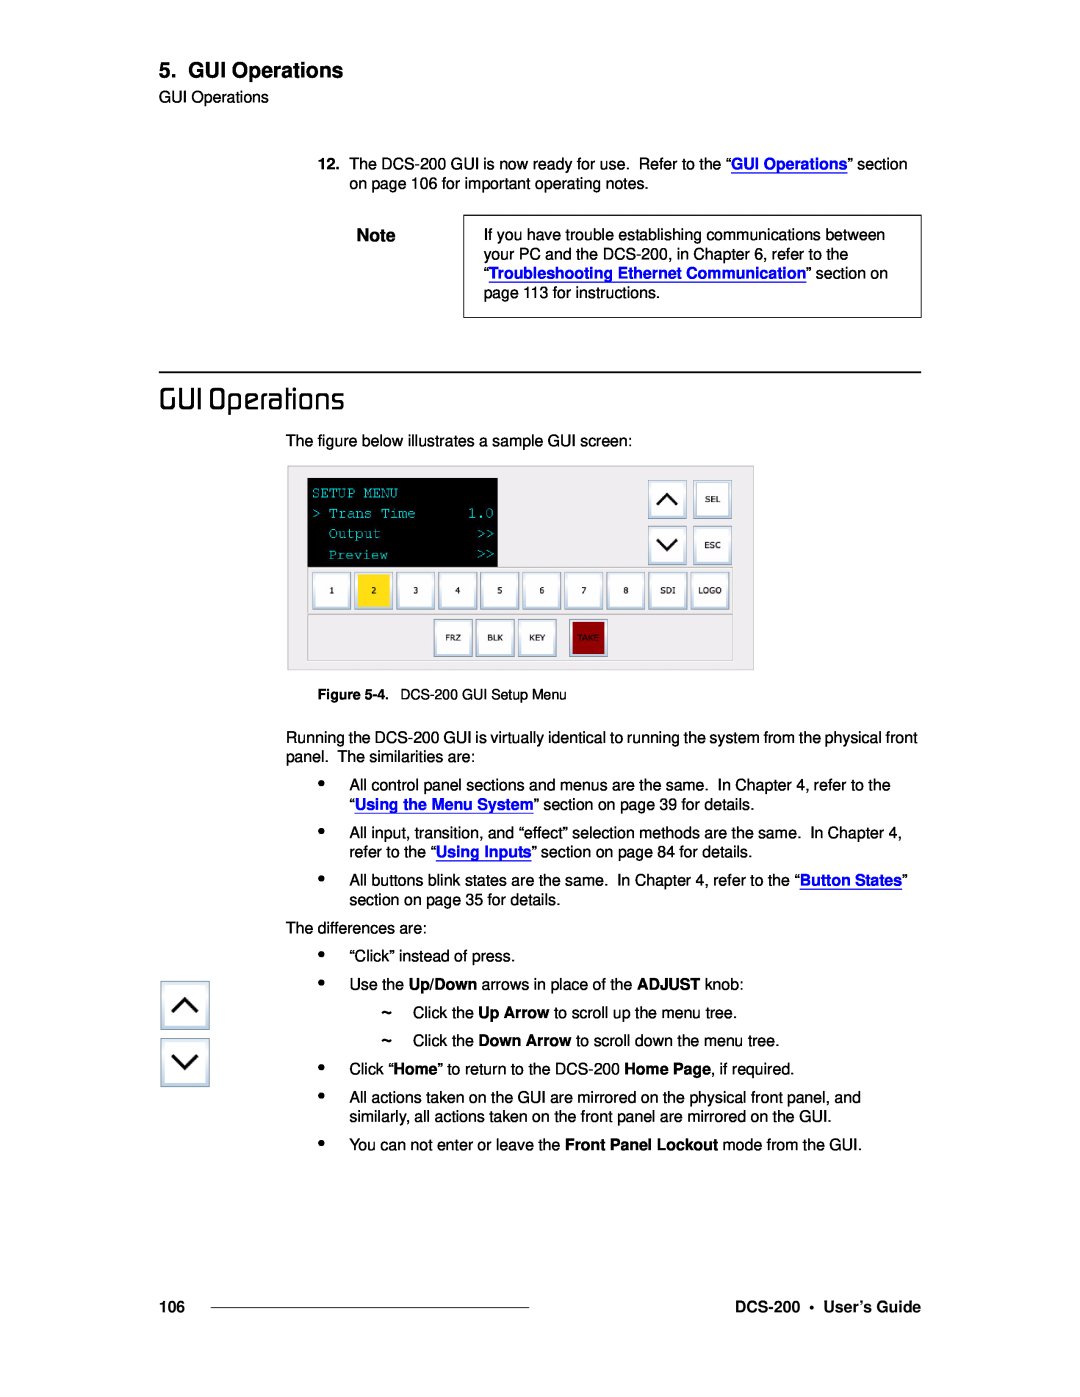 Barco manual drf=léÉê~íáçåë, GUI Operations, DCS-200 User’s Guide, 4. DCS-200 GUI Setup Menu 